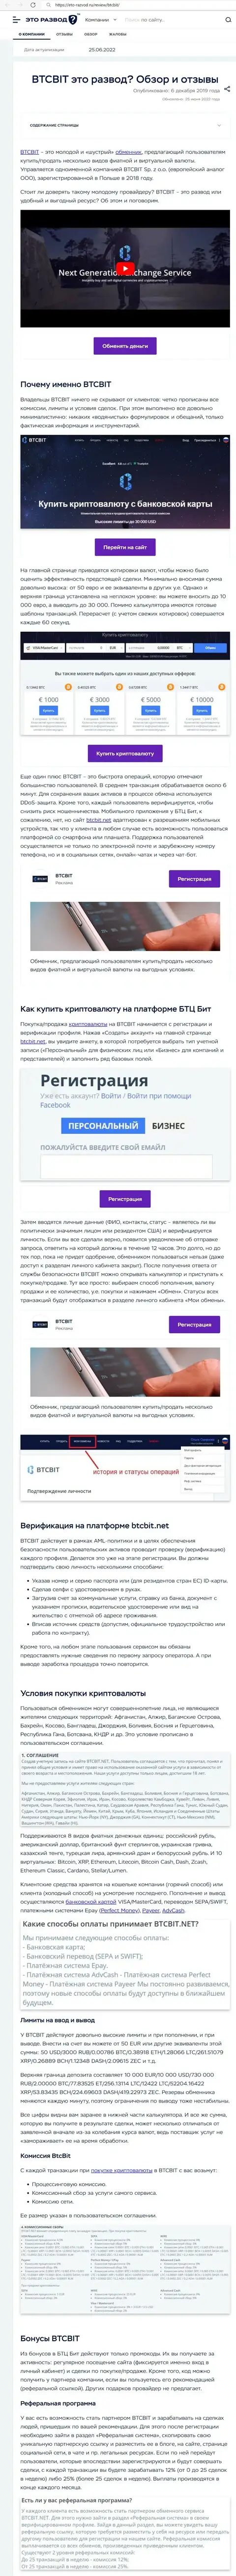 Обзор деятельности и условия для предоставления услуг онлайн обменника BTCBit в обзоре на информационном портале Eto-Razvod Ru